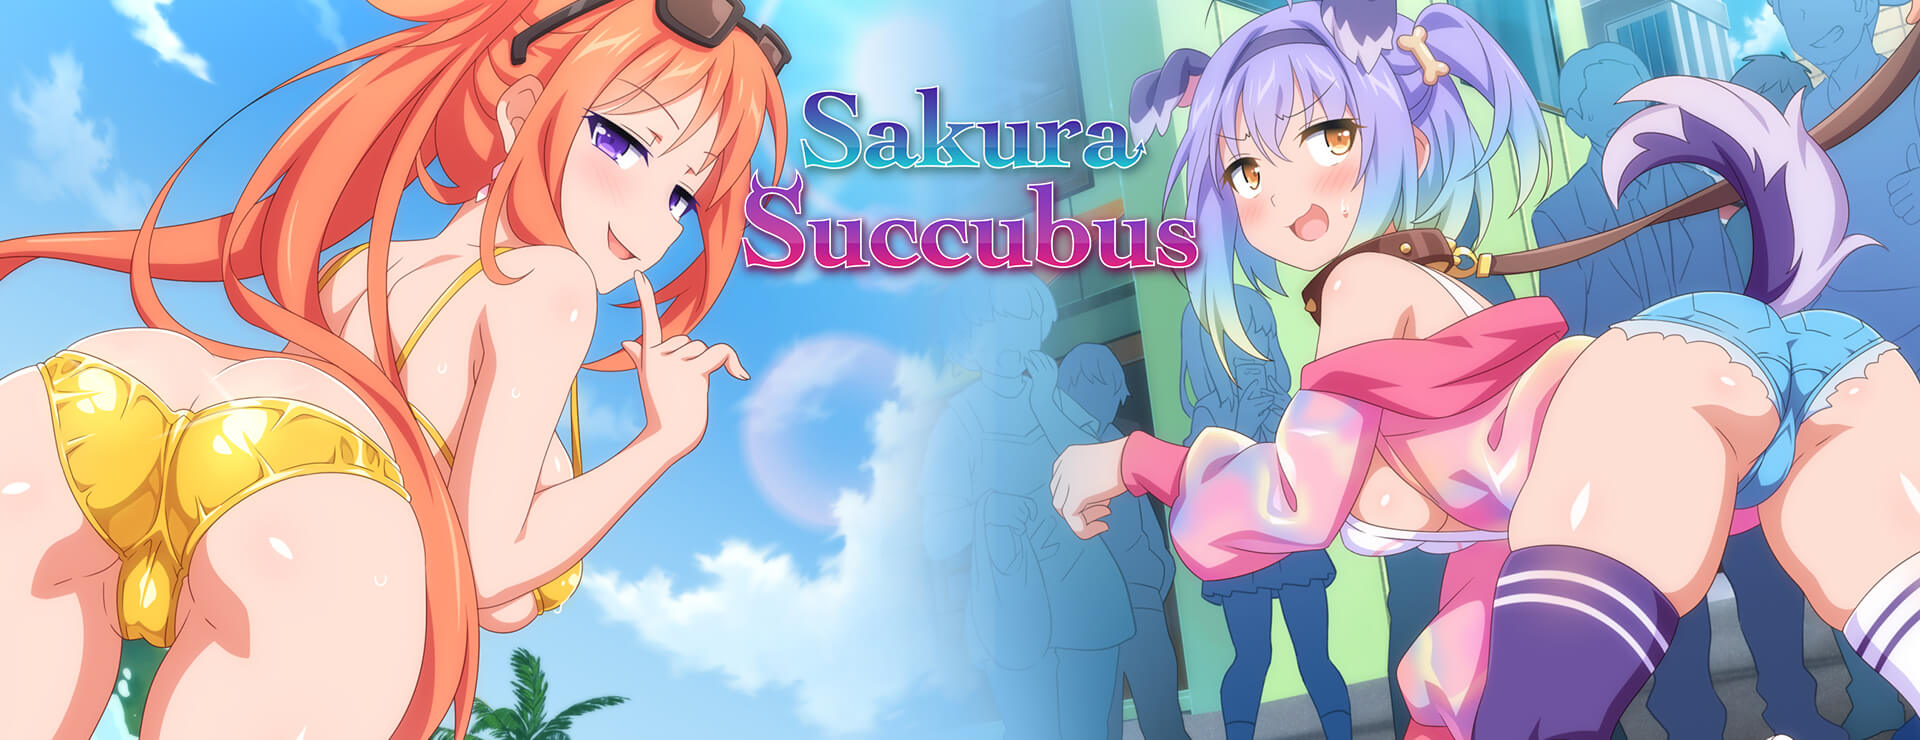 Sakura Succubus - Novela Visual Juego